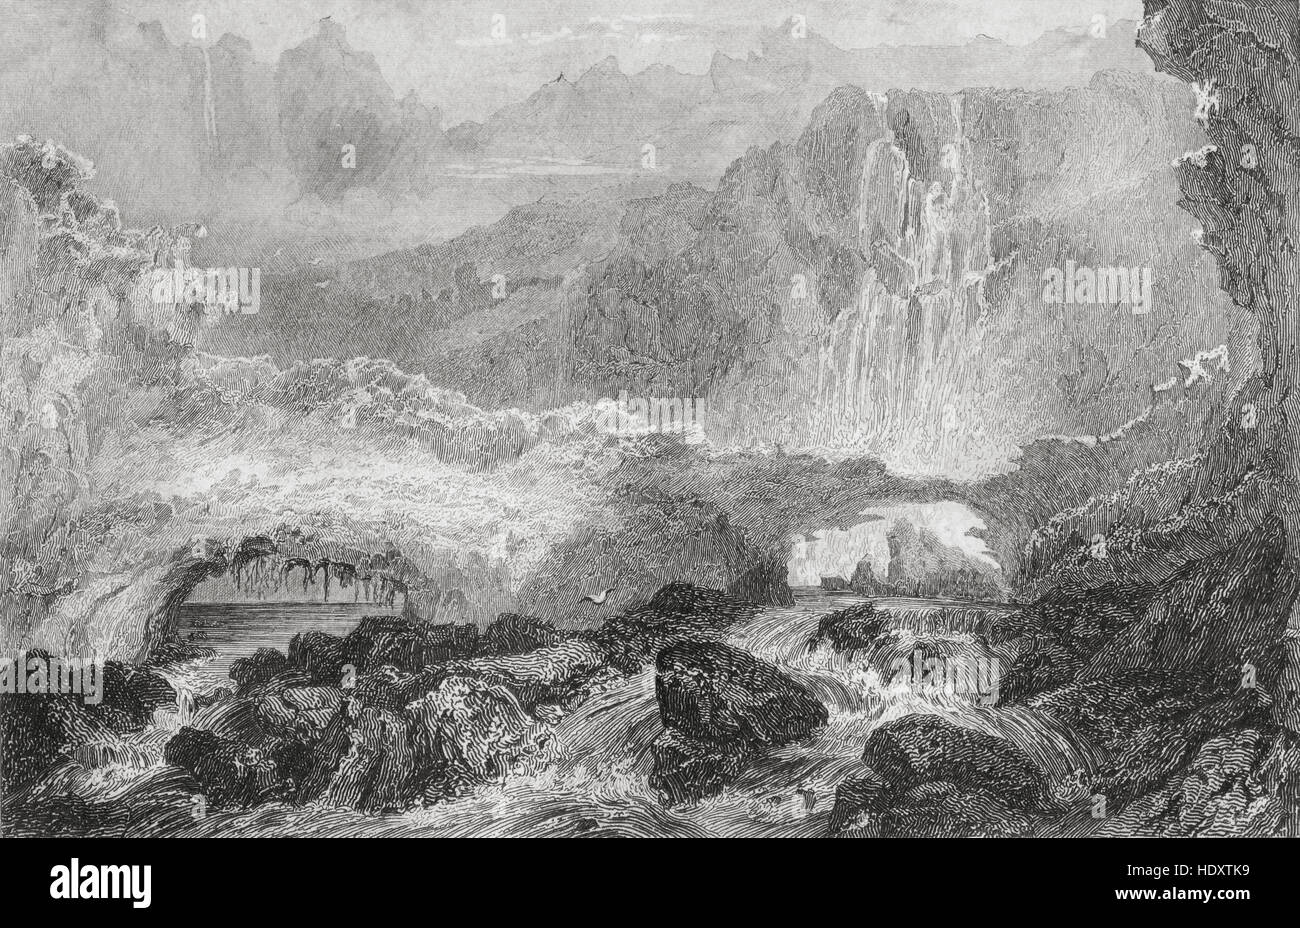 Pont de neige et cascade de Gavarnie, Pyrénées, France. 19ème siècle gravure sur acier par Thienon, Lemaitre direxit et Lalaisse. Banque D'Images